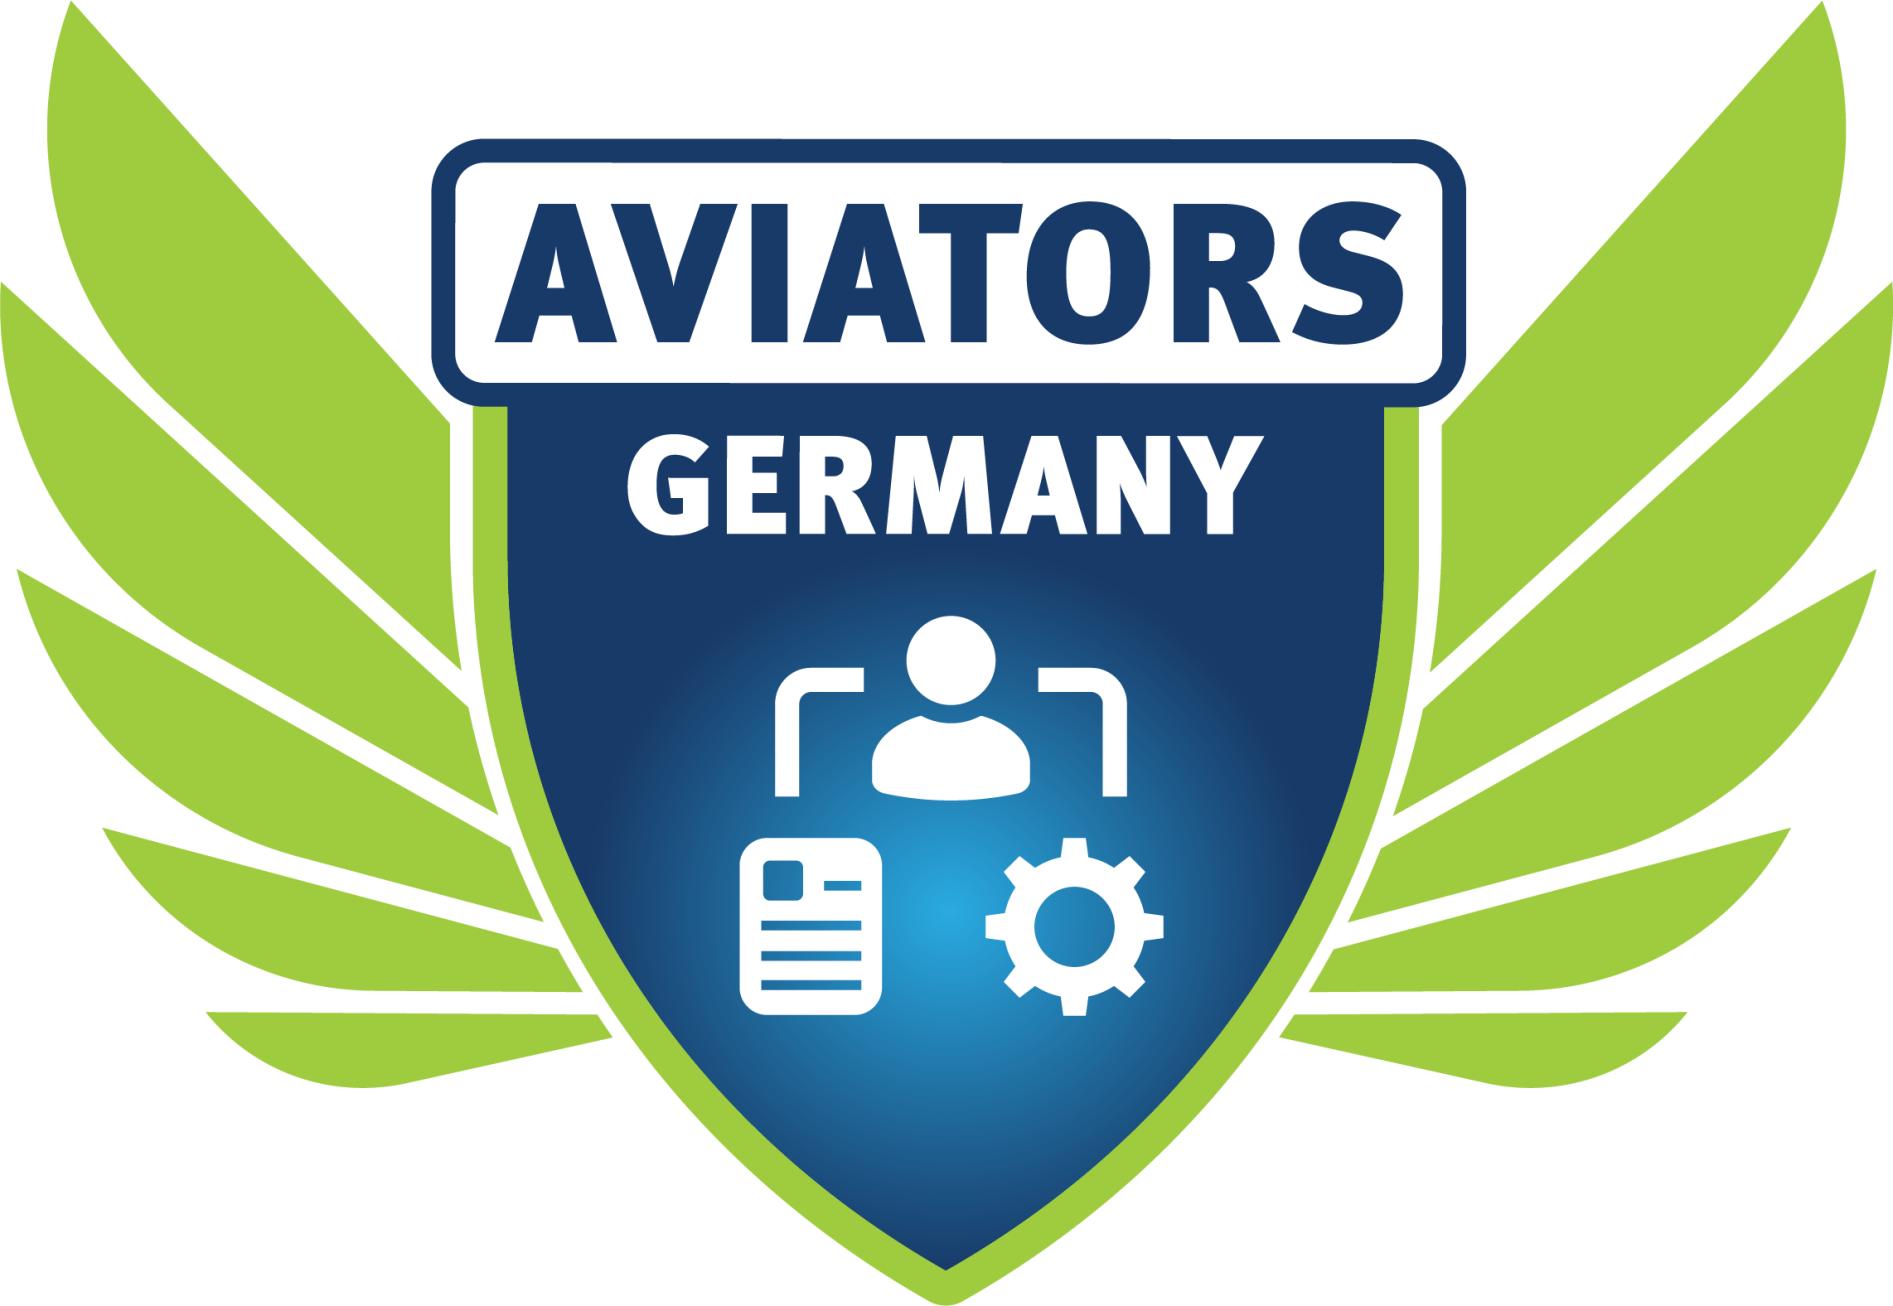 Aviators Germany Logo - Die deutschsprachige (Azure) Integration Community.